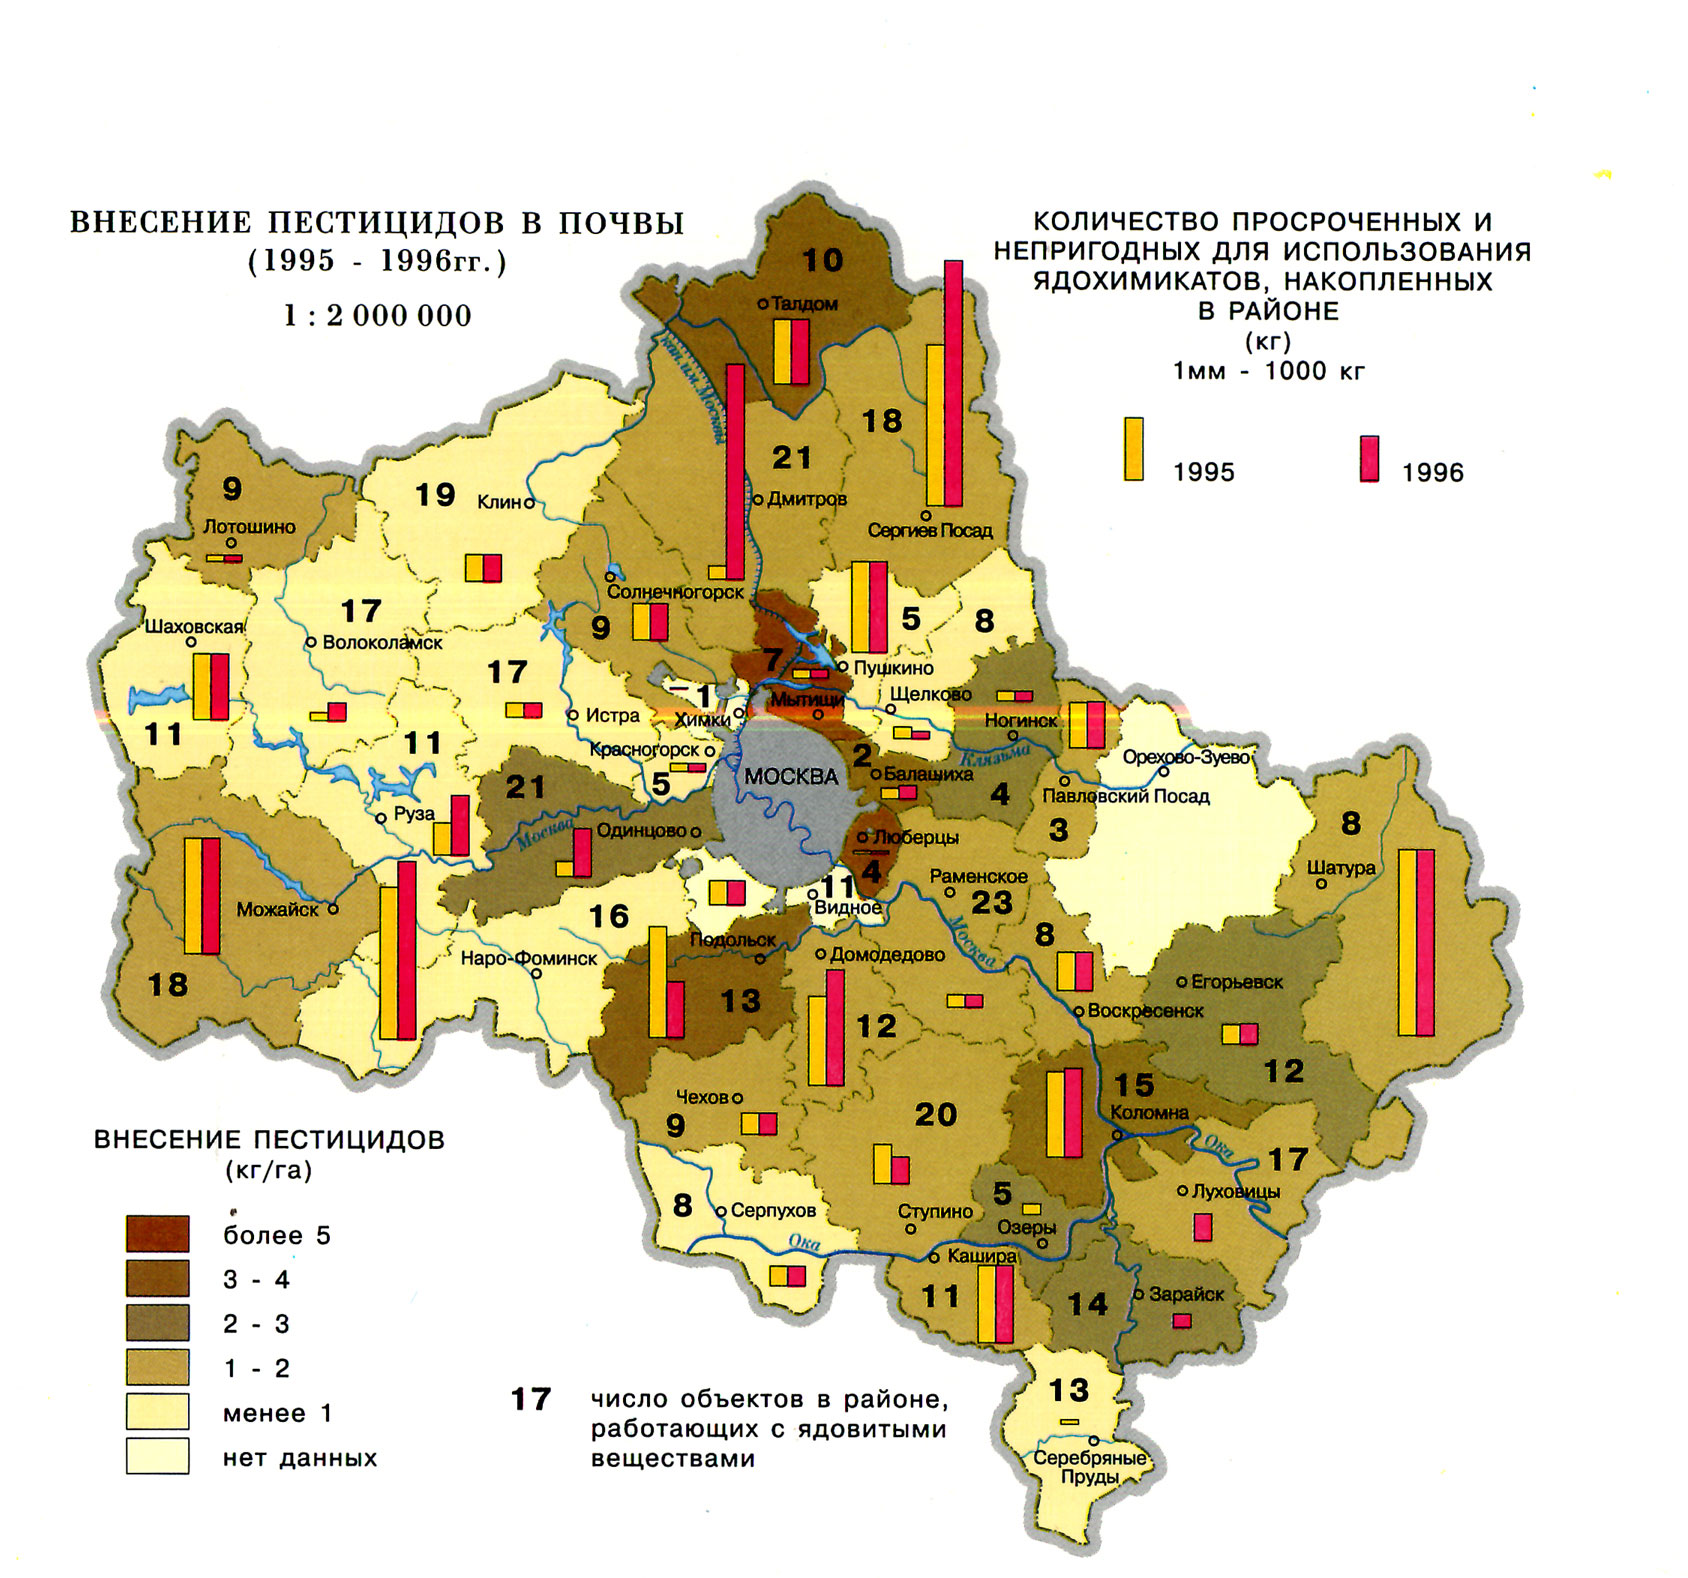 Сколько проживает в московской области